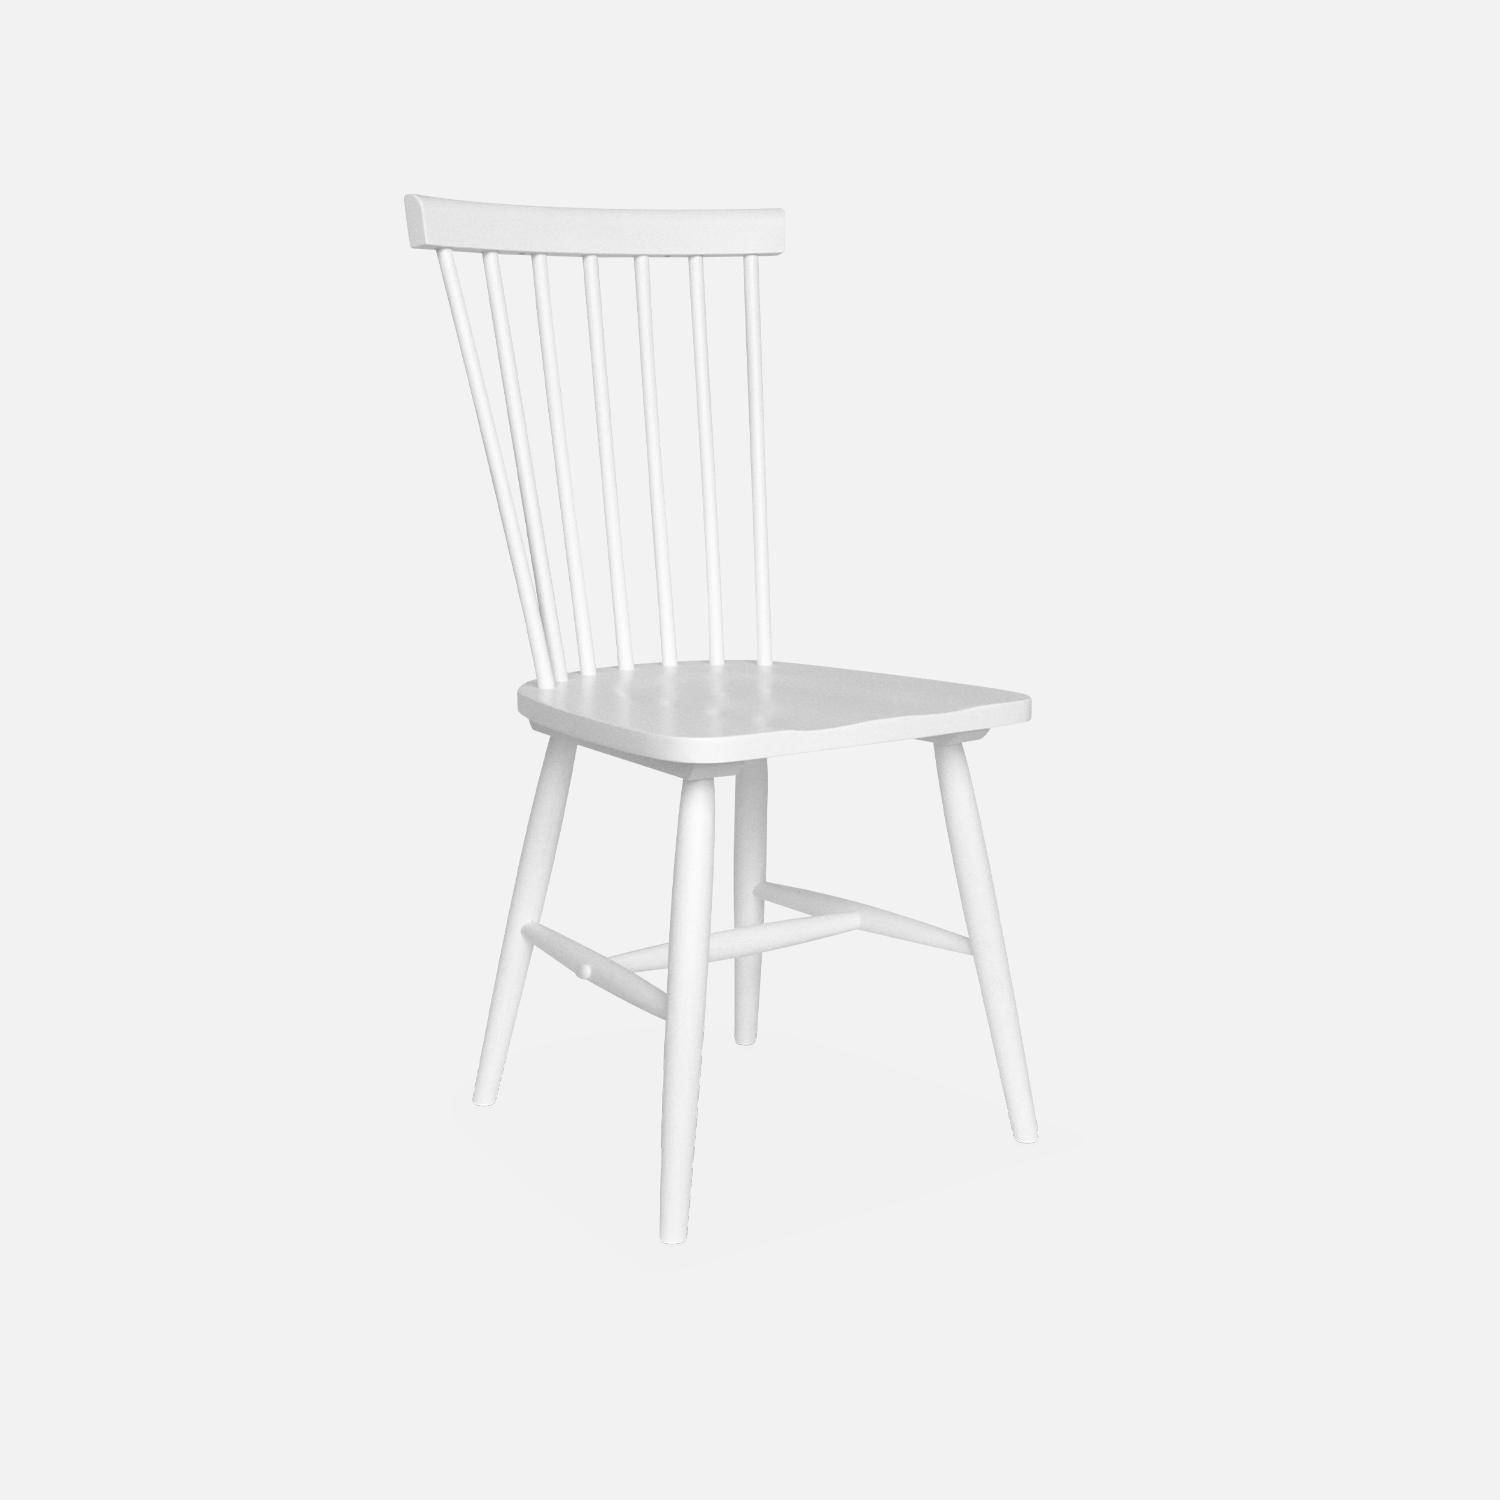 Lot de 2 chaises blanches à barreaux en bois d'hévéa, ROMIE, L 50,8 x P 44,2 x H 90cm. Livraison offerte, garantie 2 ans, meilleur prix garanti ! ,sweeek,Photo5